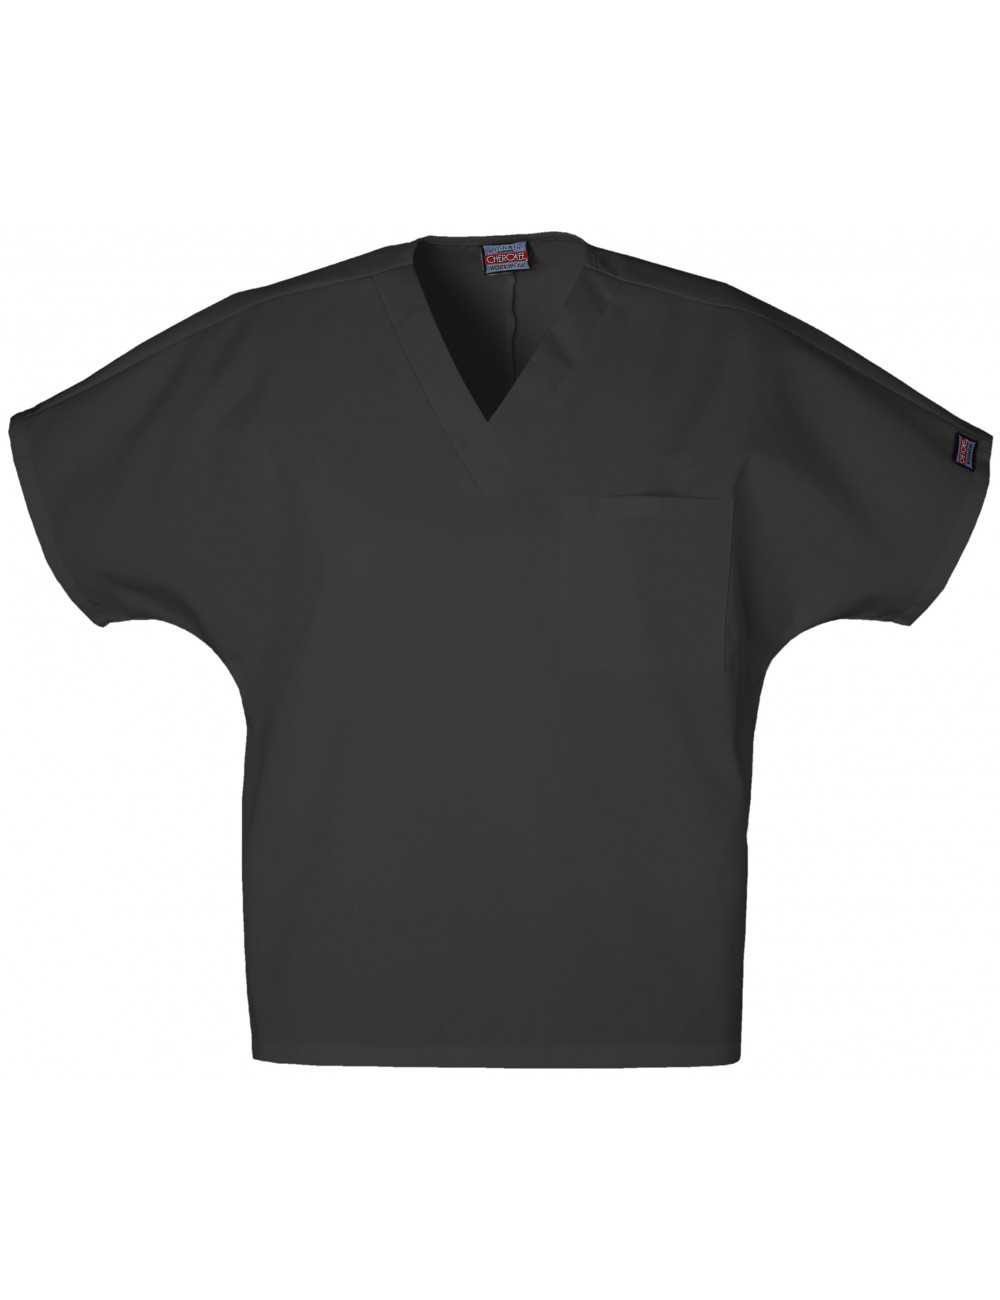 Women's Medical Gown, 1 pocket, Cherokee Workwear Originals (4777)